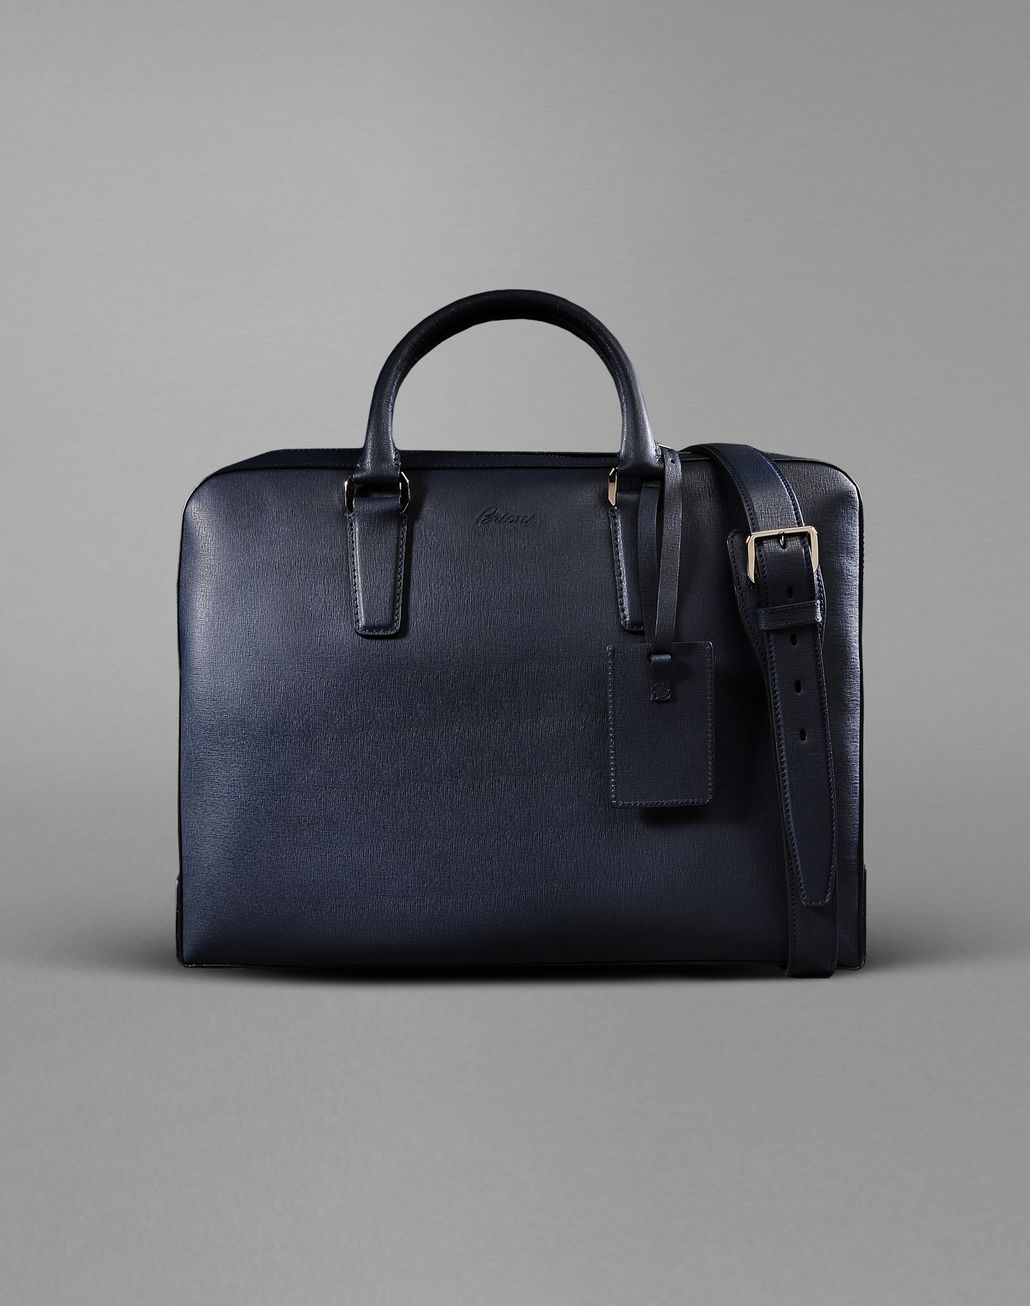 Brioni Men's Bag | Brioni Official Online Store